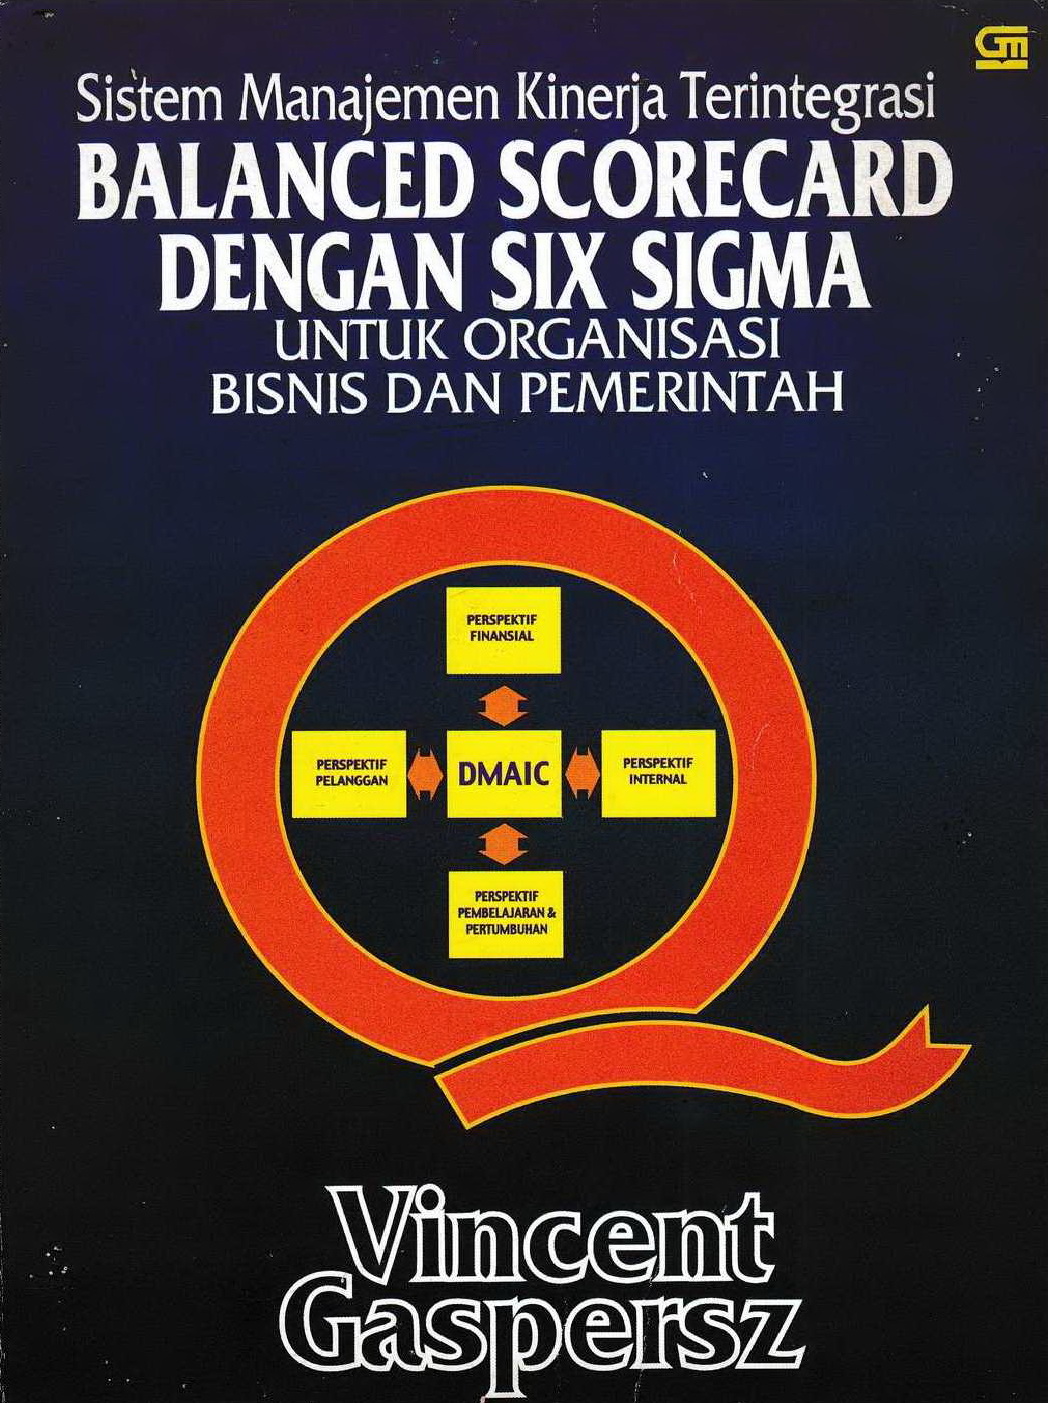 2005 Sistem Manajemen Kinerja Terintegrasi Balanced Scorecard Dengan Six Sigma Untuk Organisasi Bisnis dan Pemerintah VG